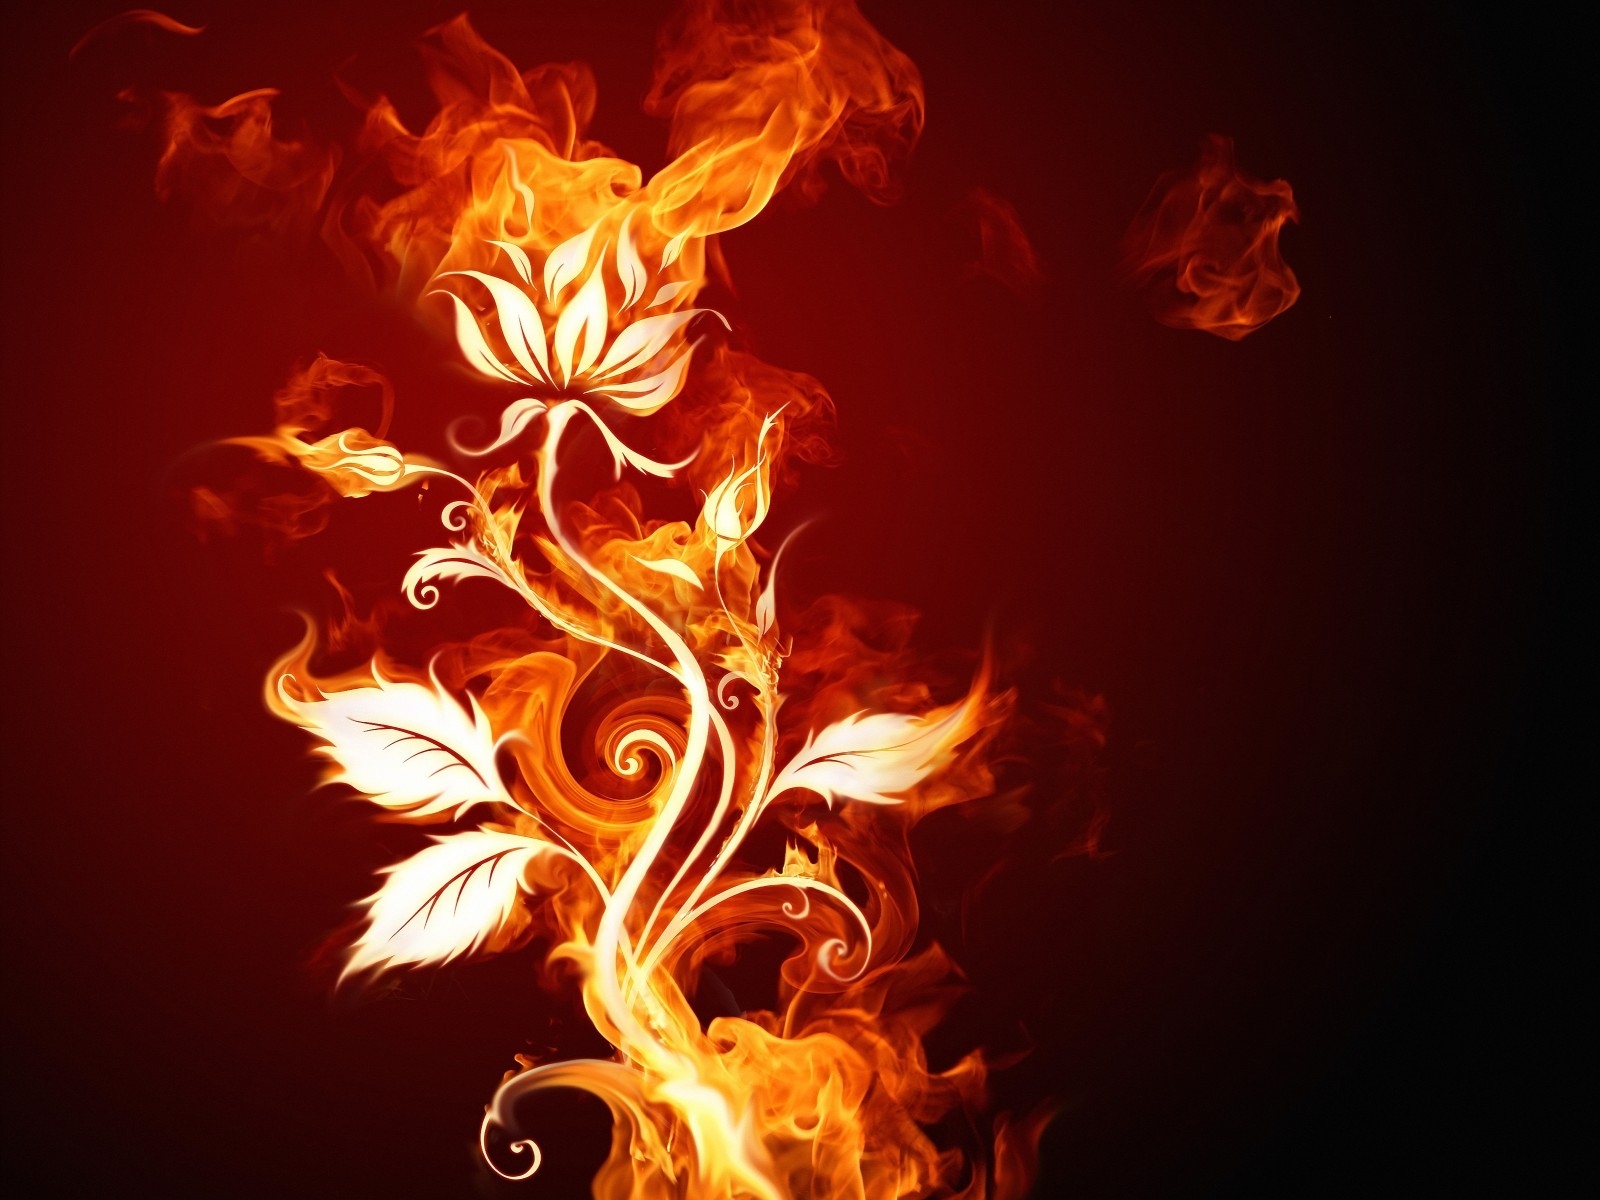 Burning Flower for 1600 x 1200 resolution